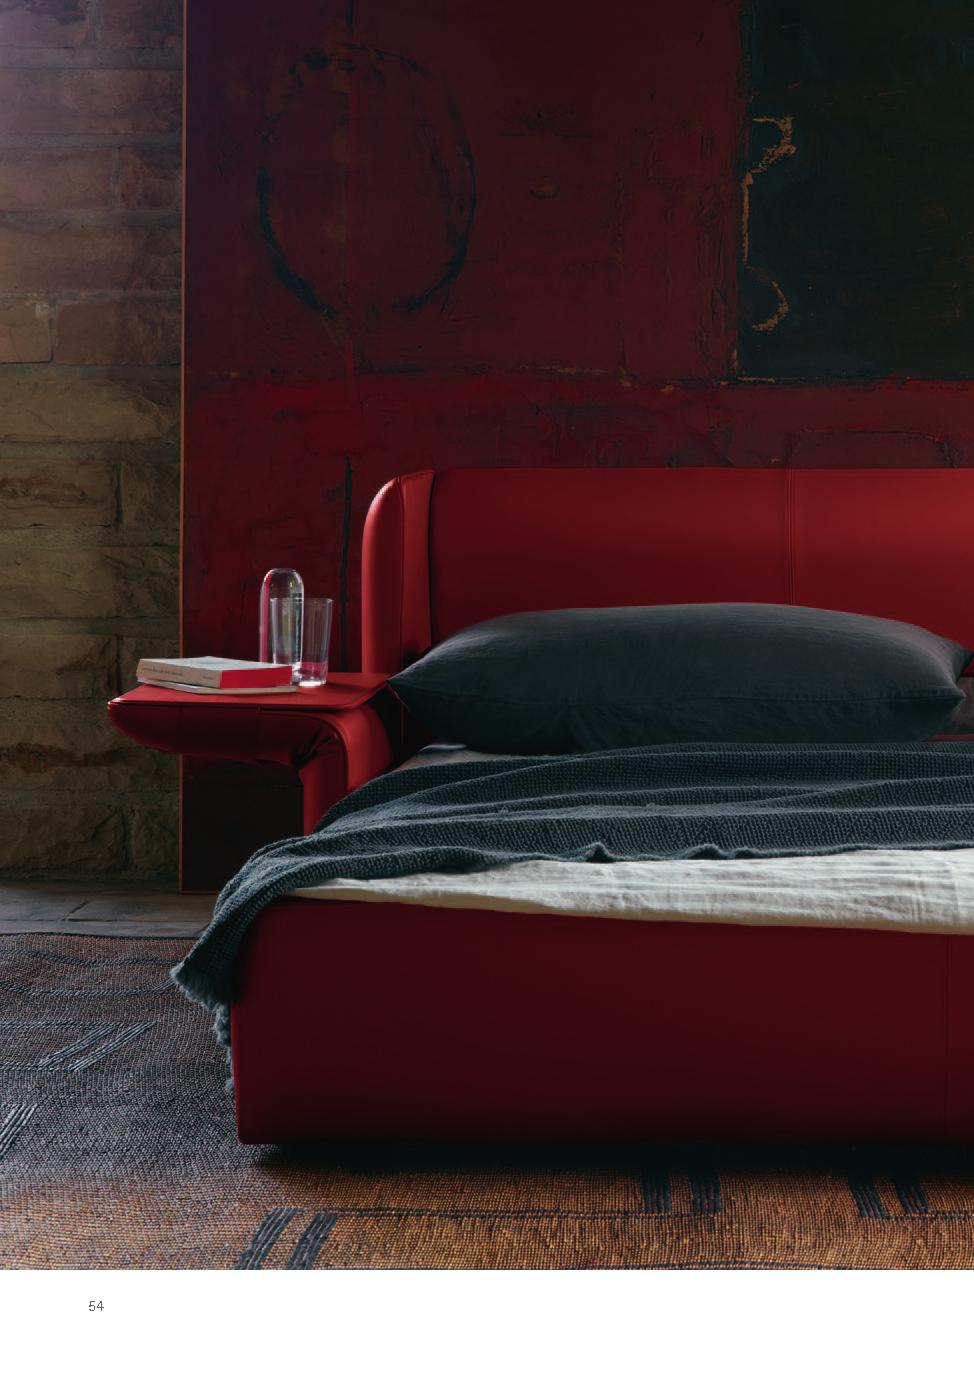 Poltrona Frau红色系沙发